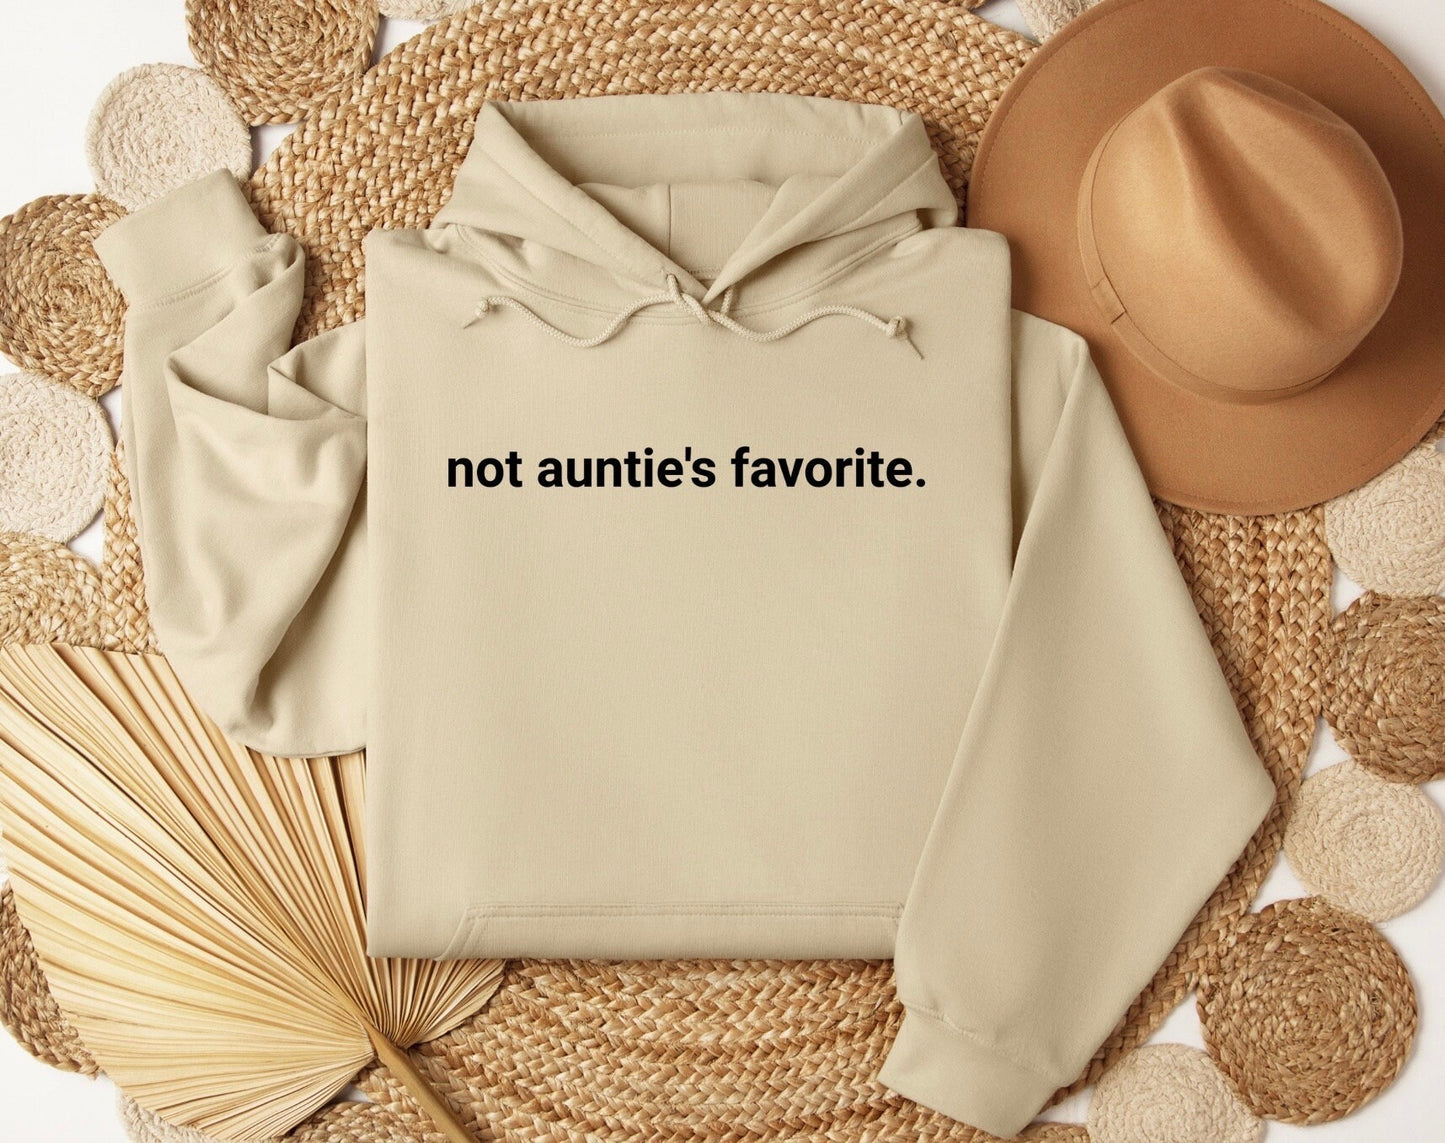 Not Aunties Favorite Sweatshirt, Not Aunties Favorite Shirt, Not Aunties Favorite Crewneck, Not Aunties Favorite Sweater, Oversized Sweater